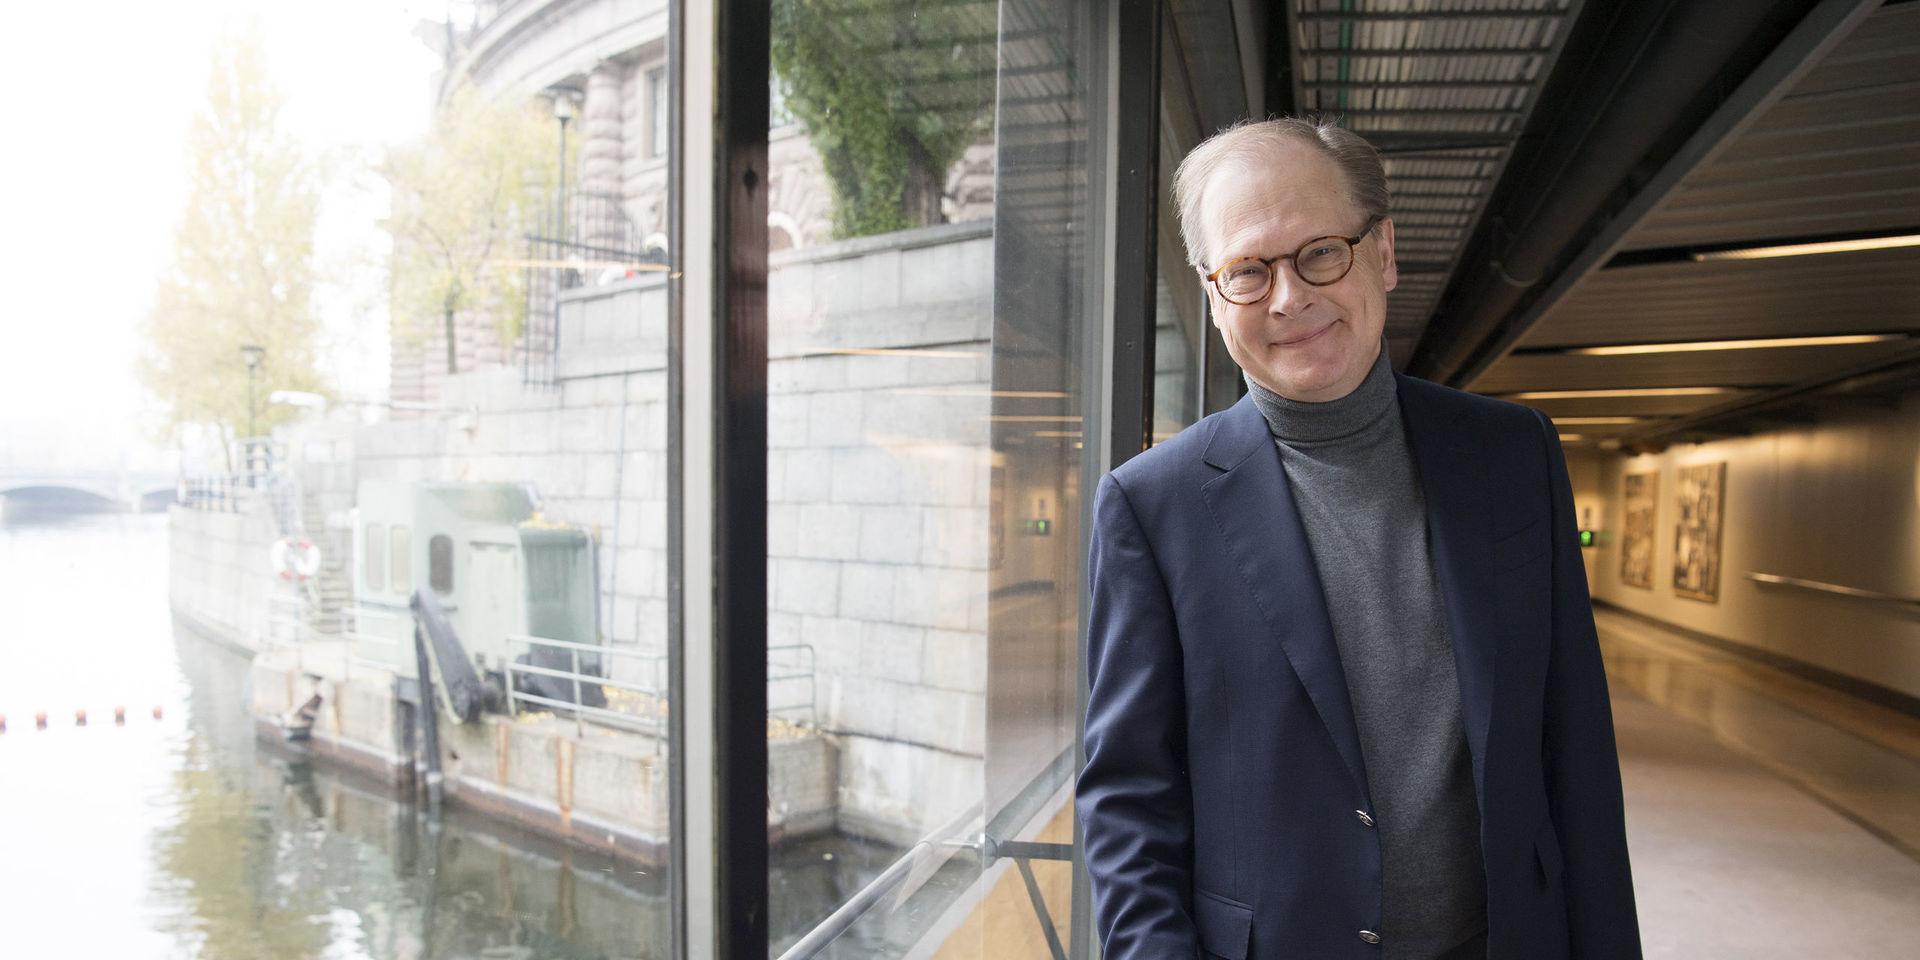 Mats Knutson rör sig hemtamt i riksdagens korridorer efter att ha bevakat svensk inrikespolitik i två decennier.